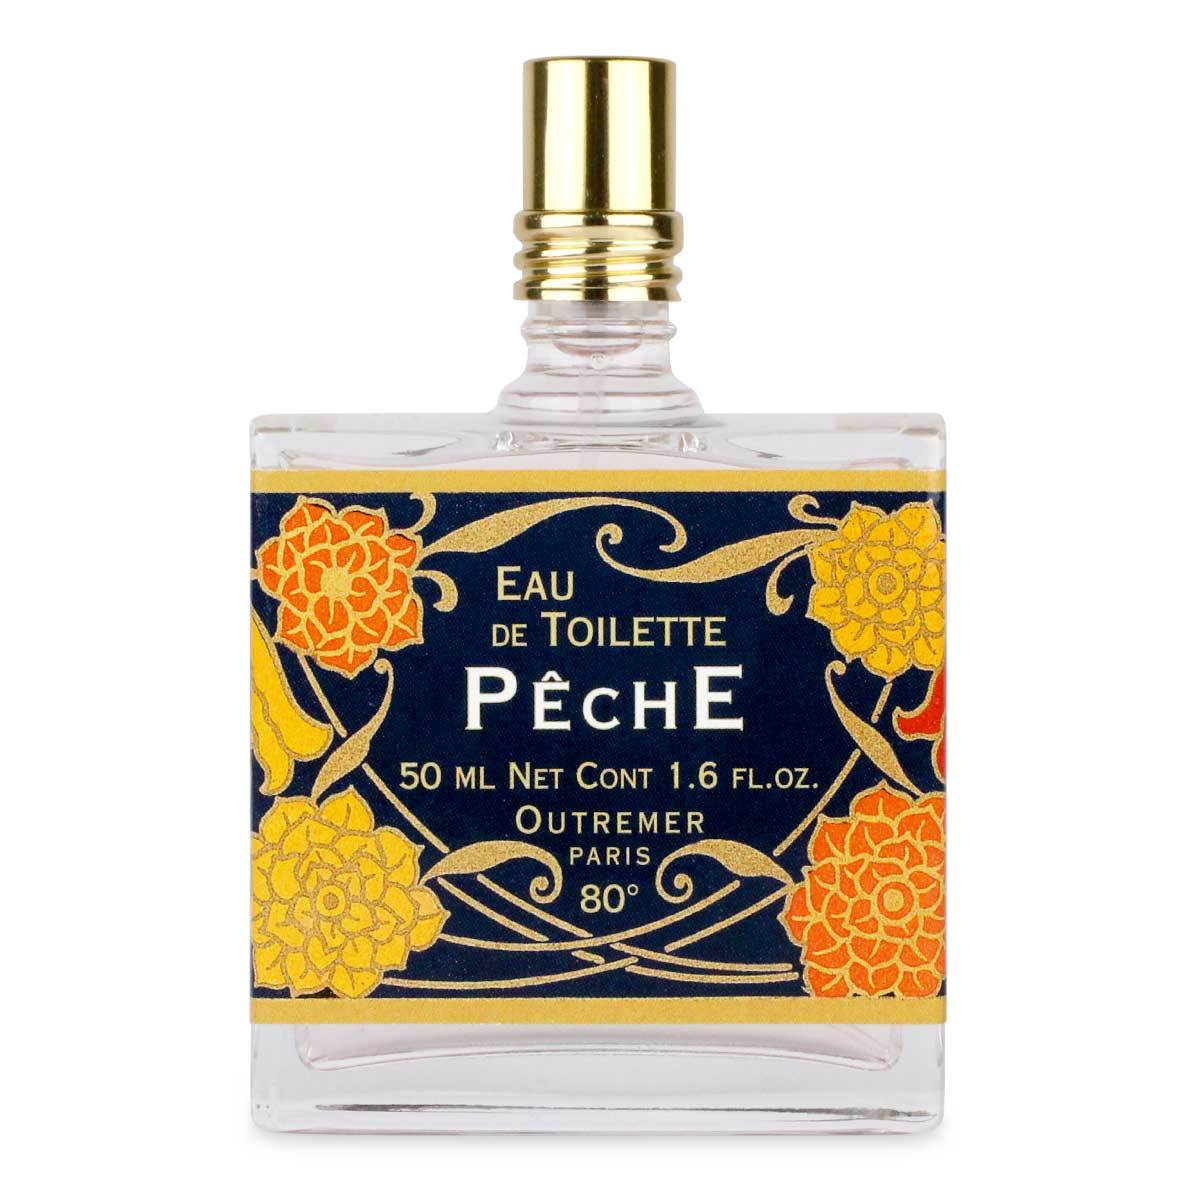 Primary image of Peche (Peach) Eau de Toilette